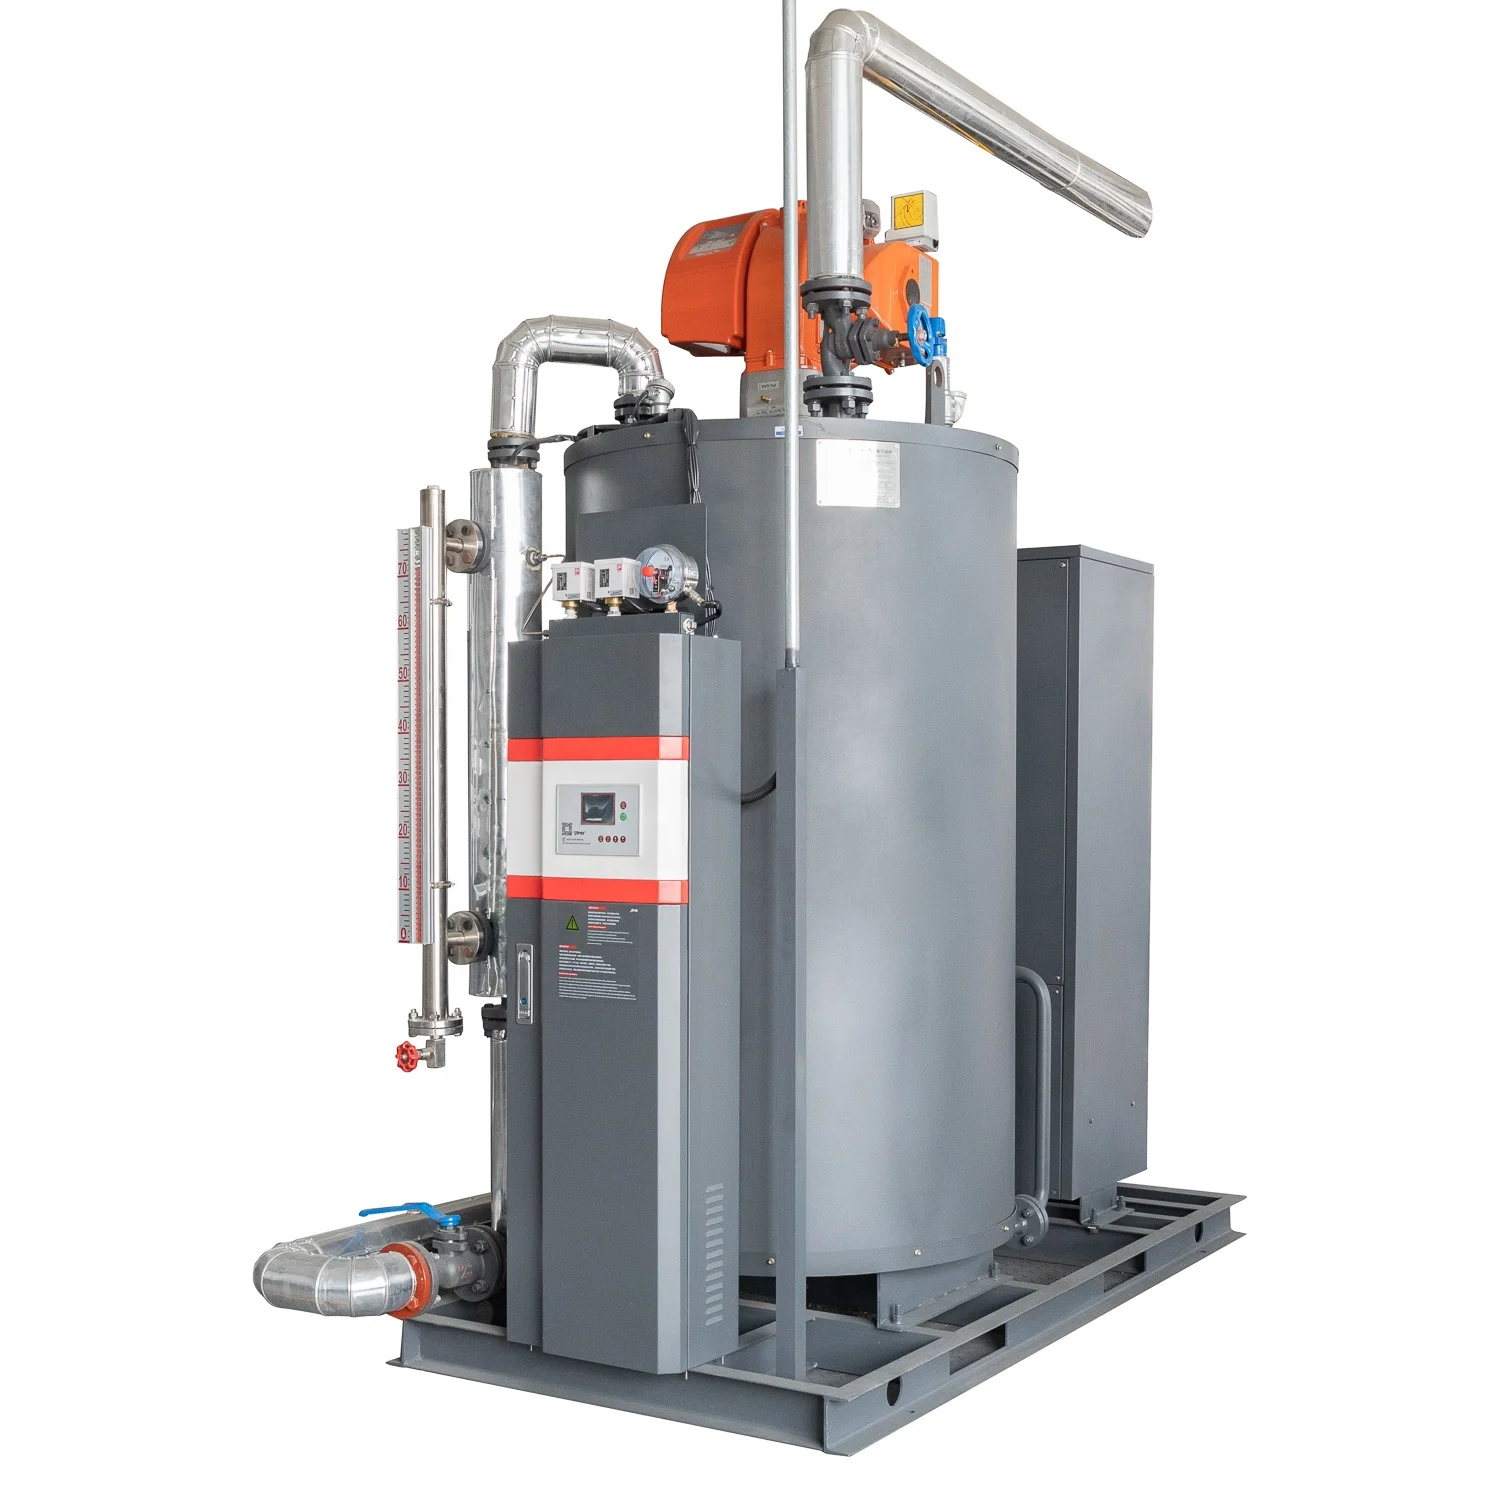 
 Вертикальный газовый/масляный промышленный паровой котел, парогенератор для пищевой промышленности 35-1000 кг/ч  